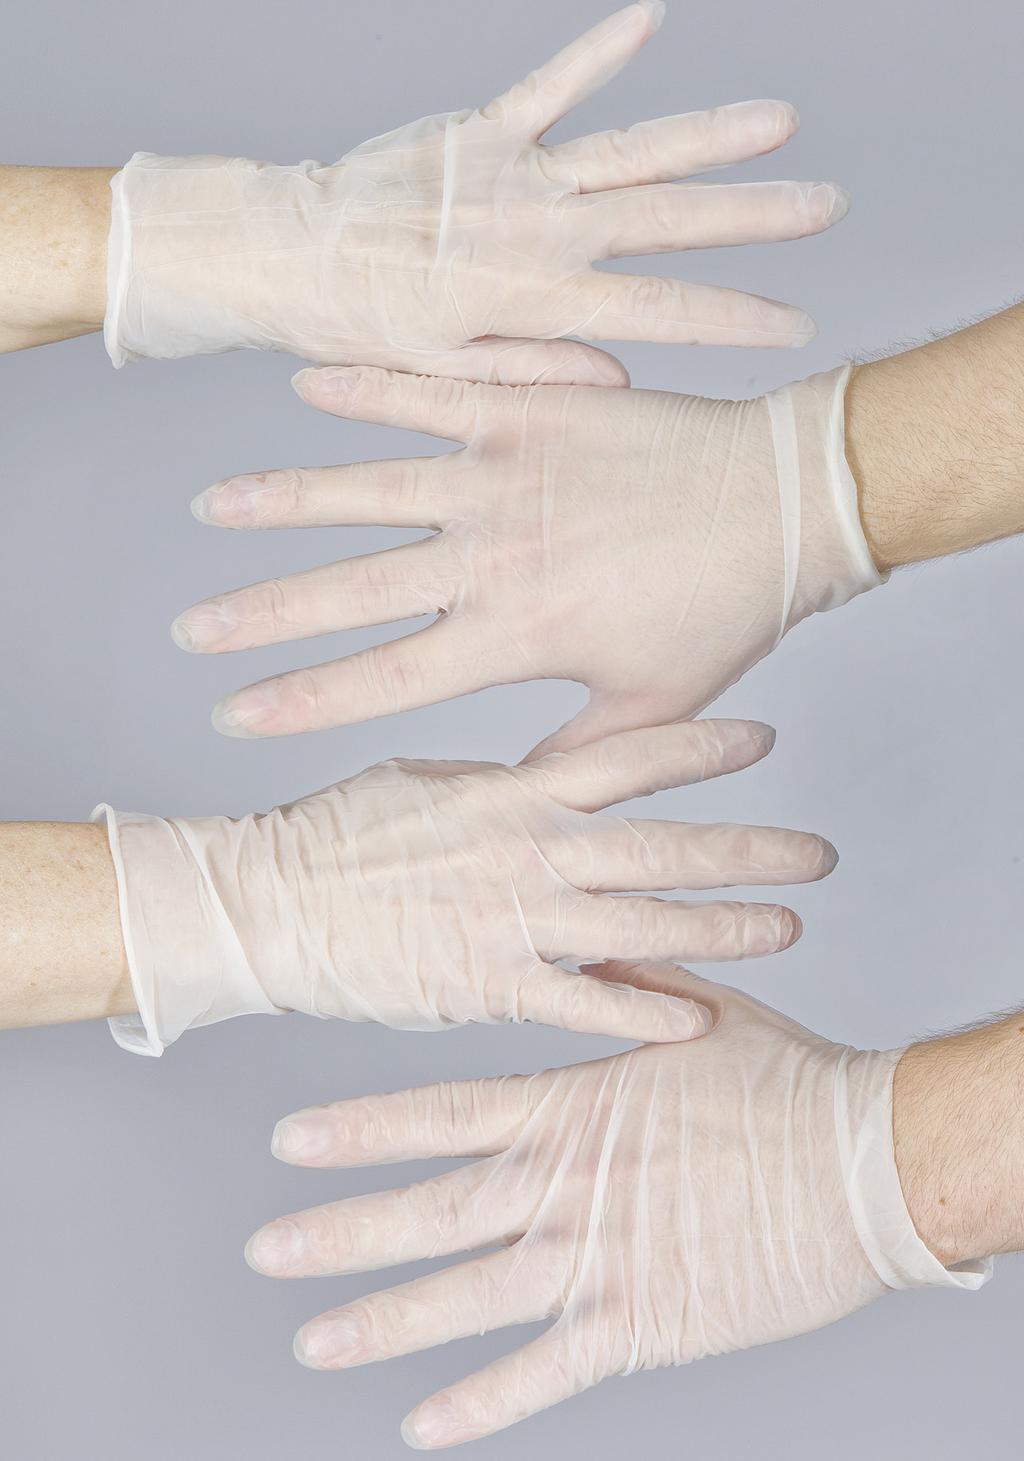 Handskar Använd alltid handskar vid kontakt med kroppsvätskor eller utsöndringar som urin, avföring, blod eller sårsekret.